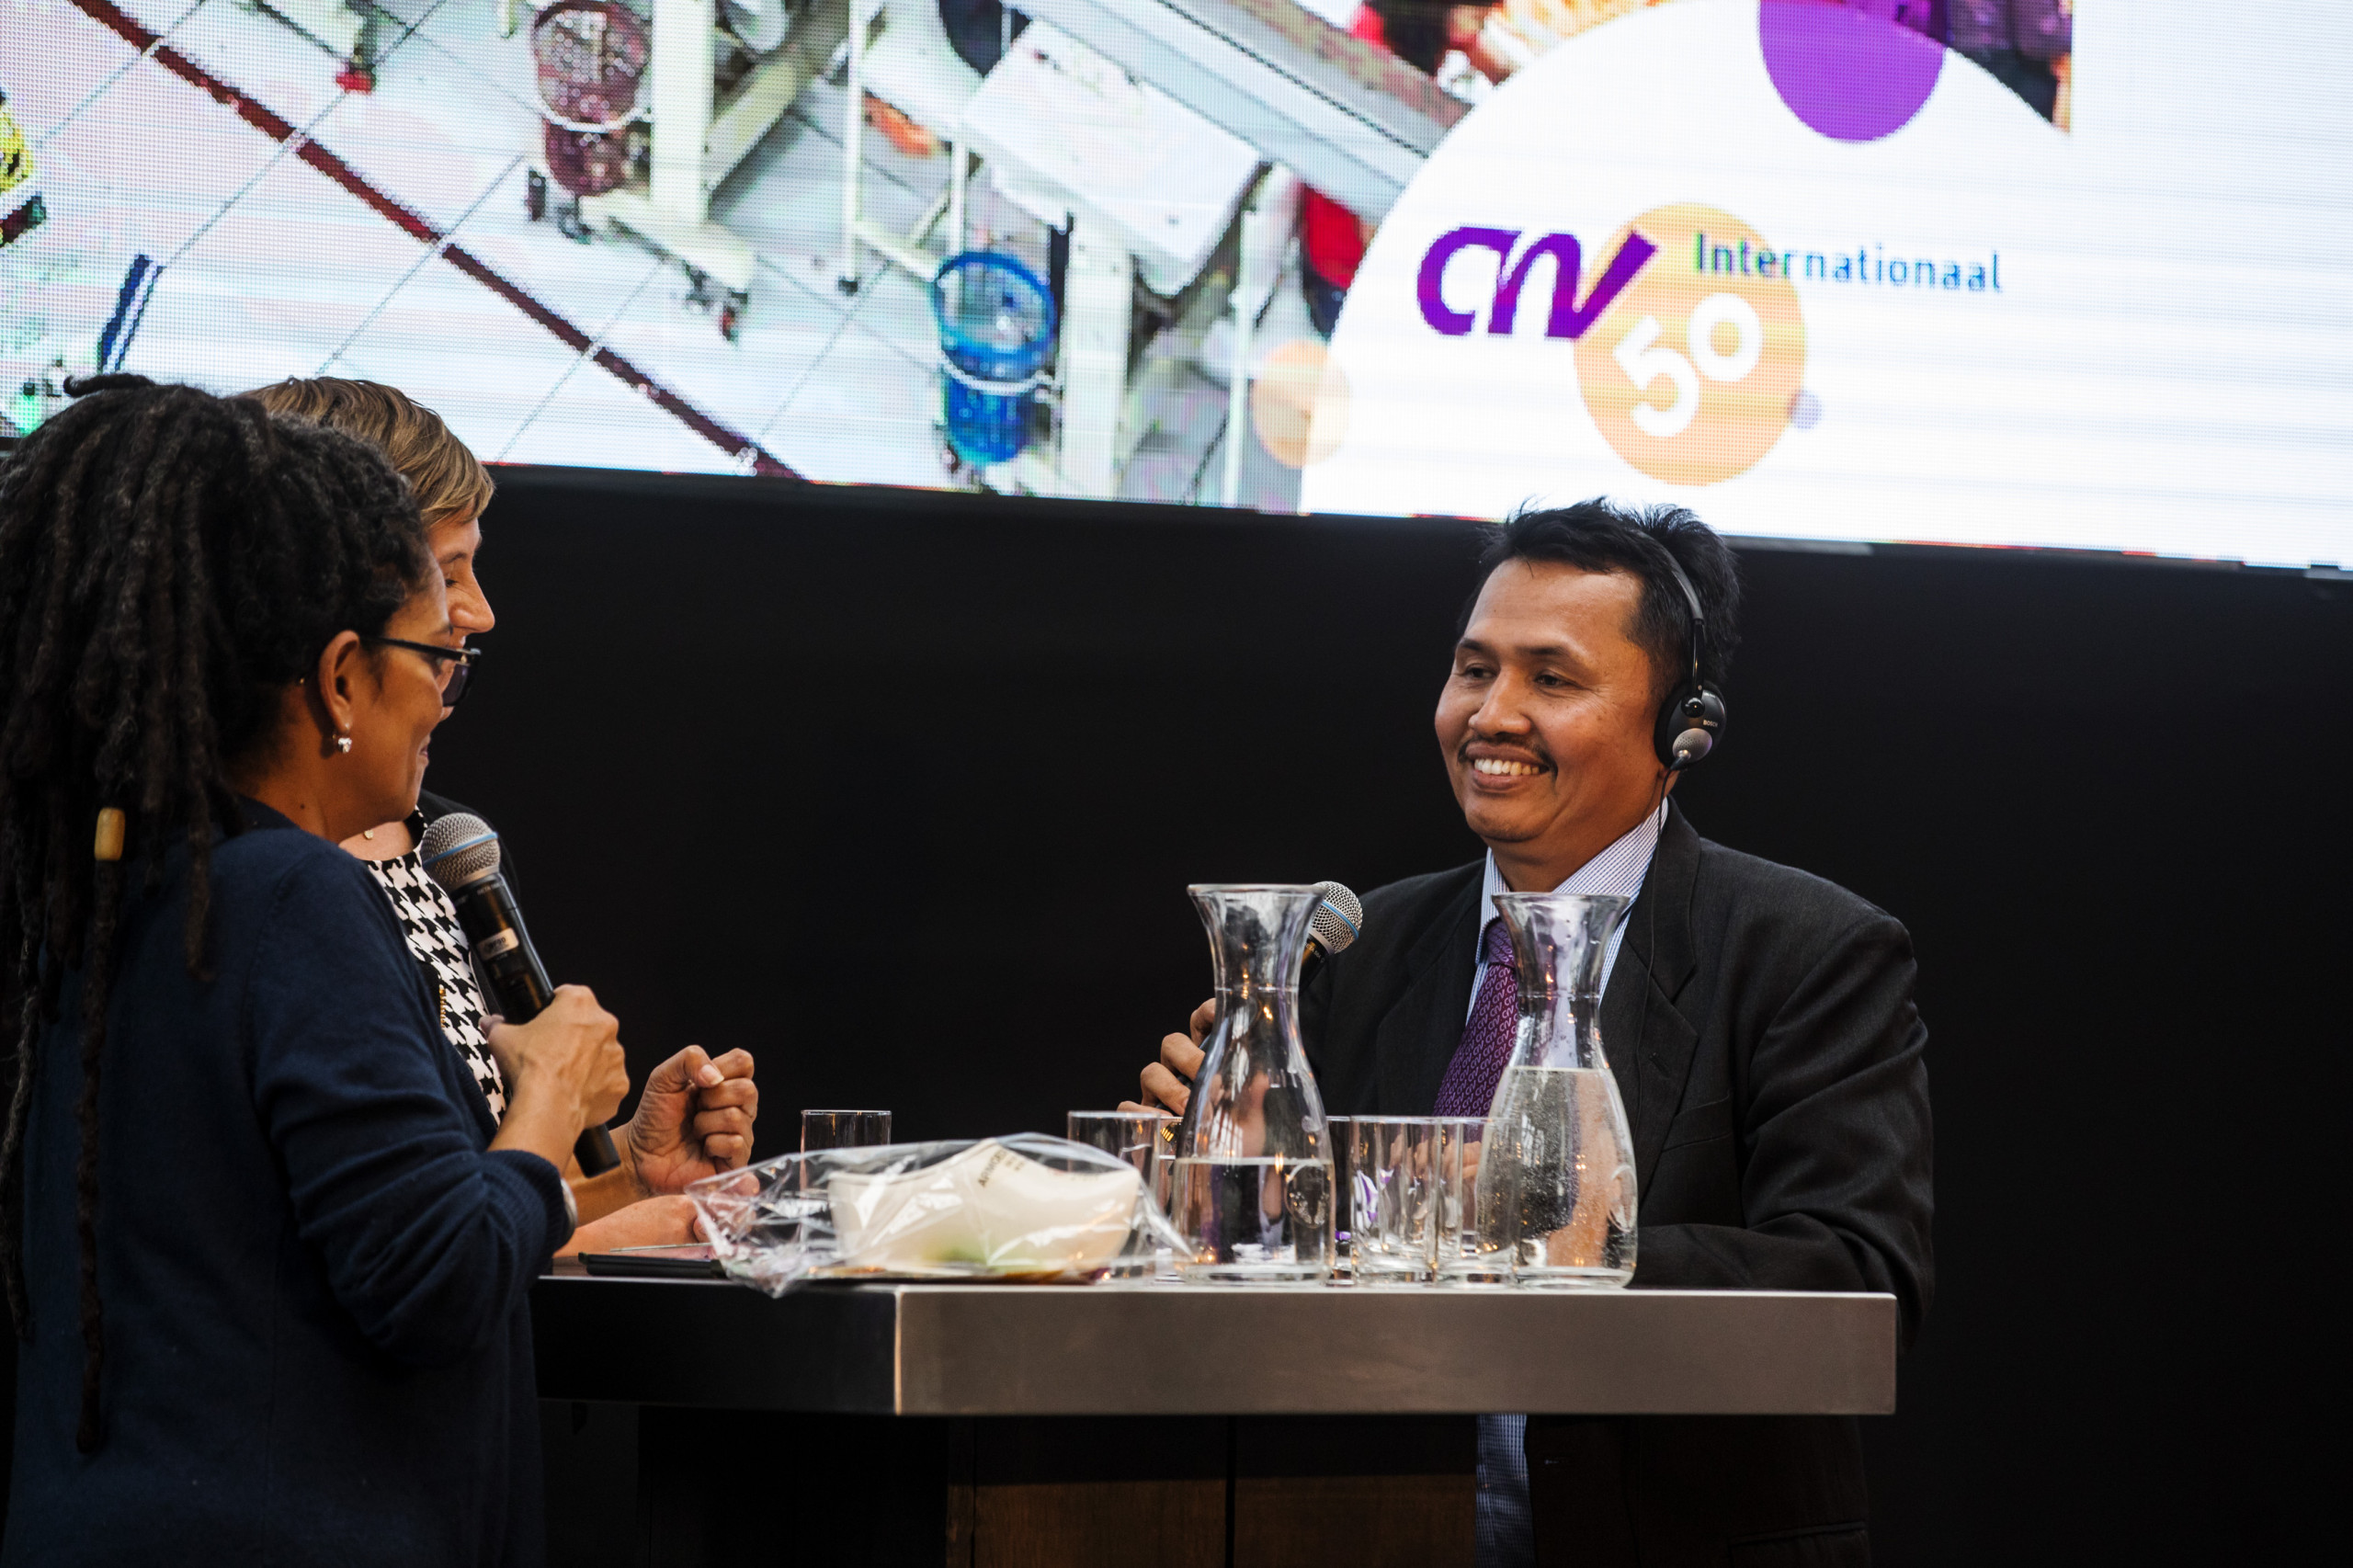 Eduard Marpaung KSBSI Indonesie in gesprek met Aldith Hunkar op 50 jaar CNV Internationaal